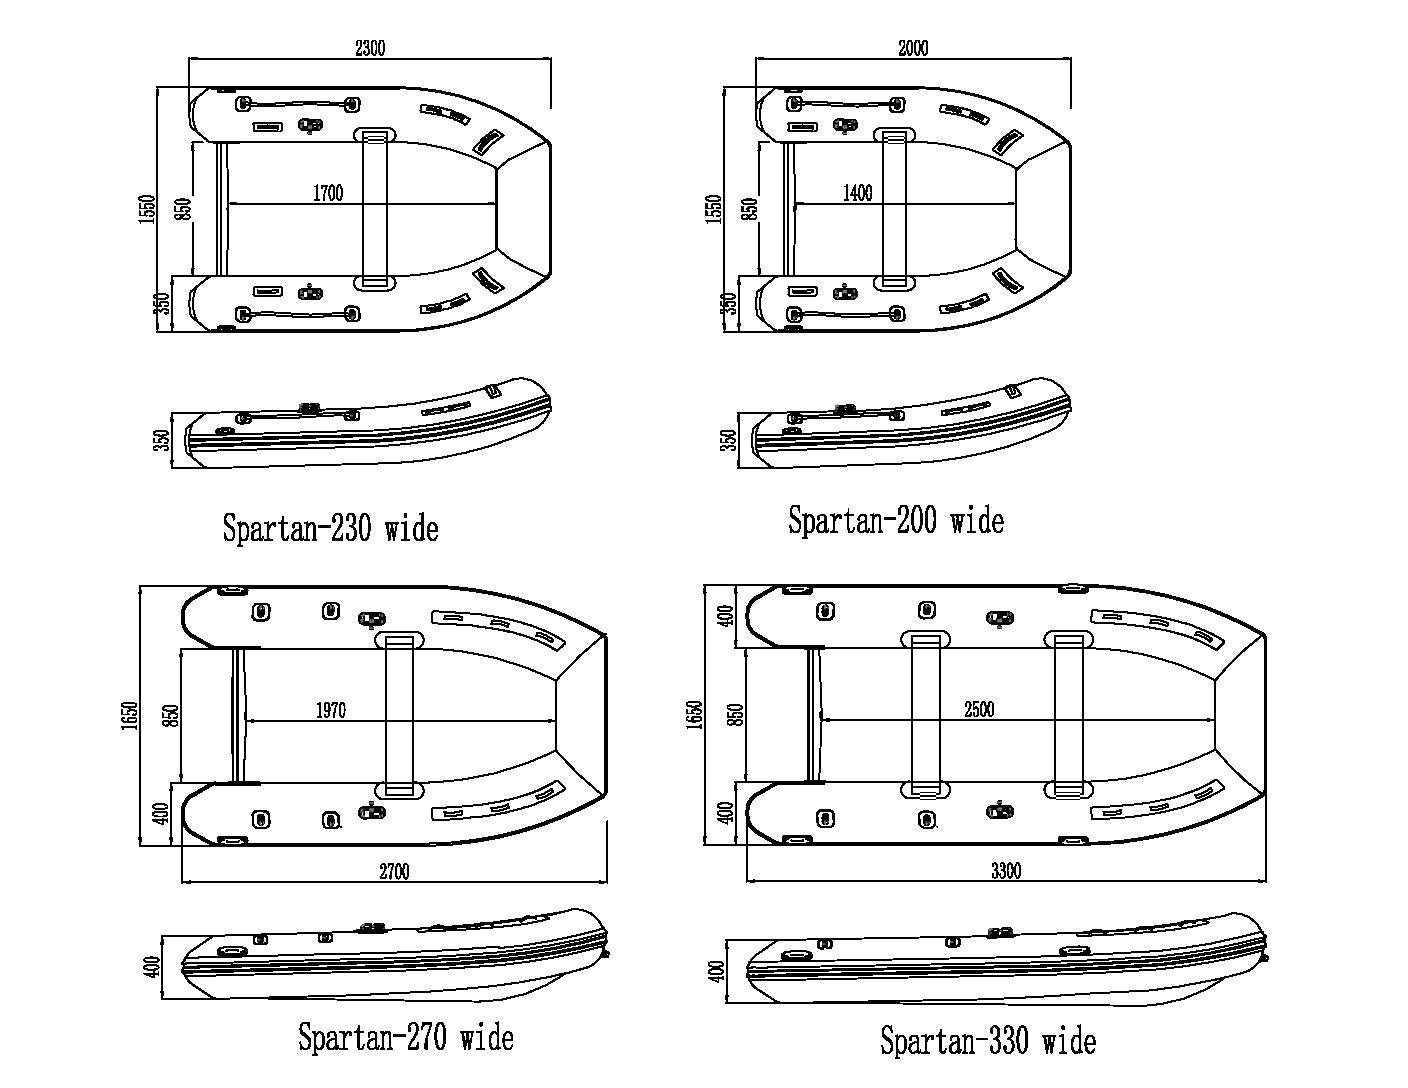 Spartan 200 Wide Camo - Spartan Boats - spartan wide - Spartan Boats - Spa/200/cam/wid